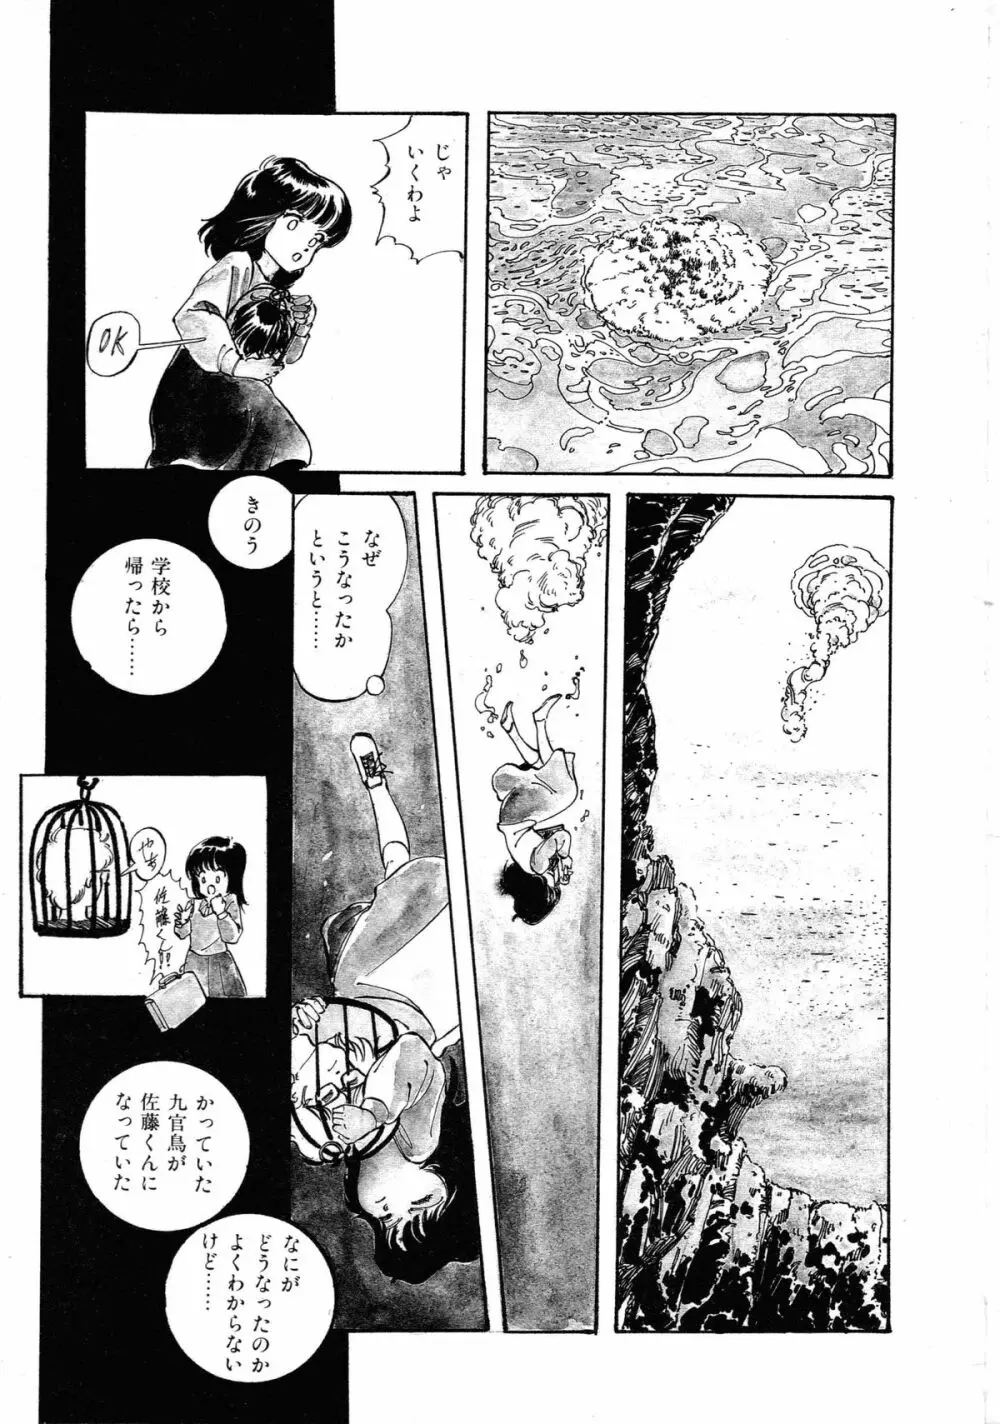 ロボット&美少女傑作選 レモン・ピープル1982-1986 225ページ